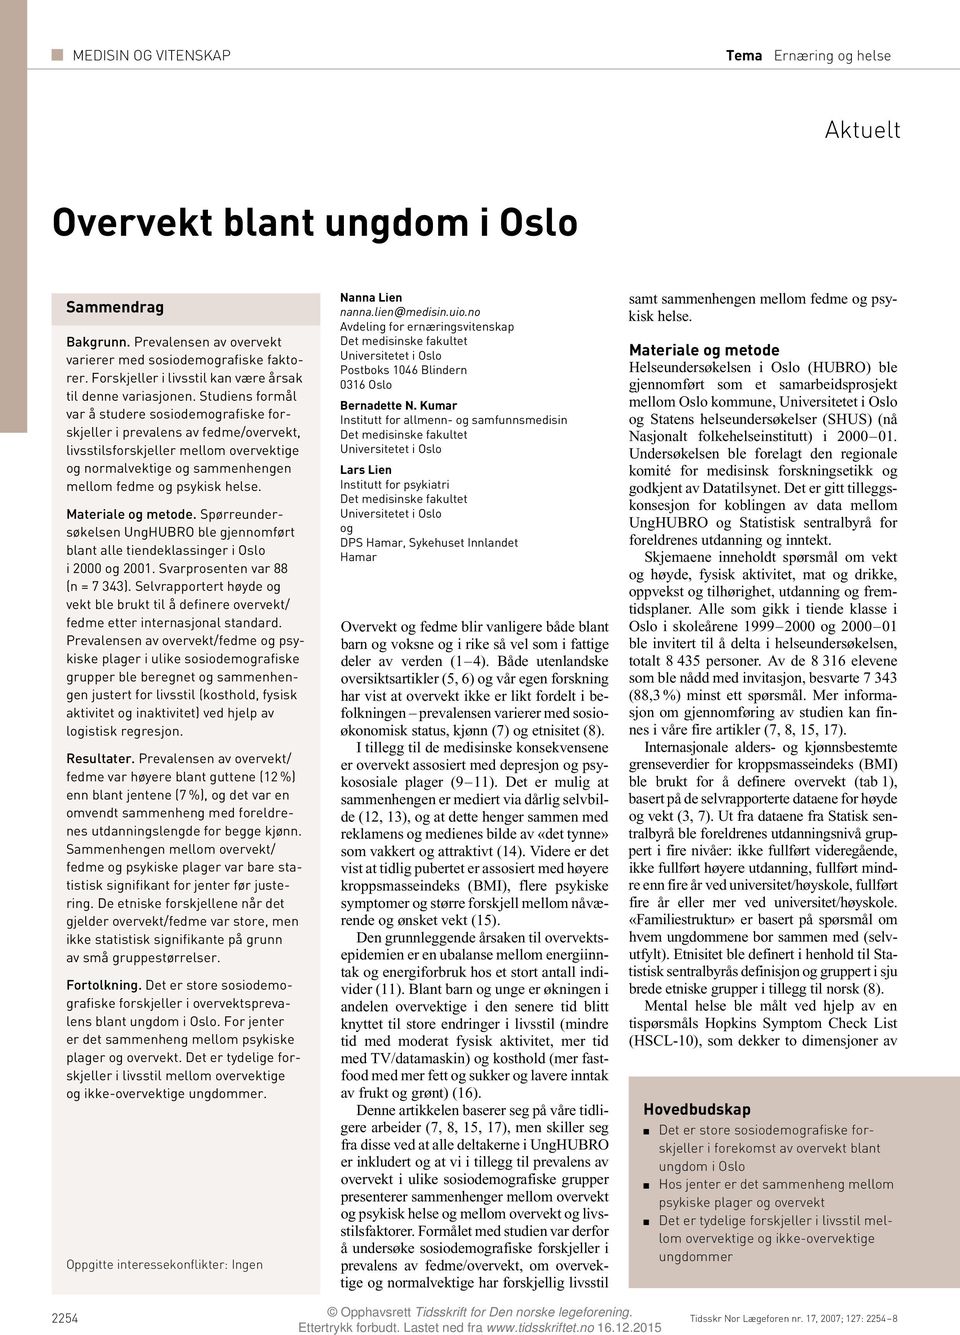 Materiale og metode. Spørreundersøkelsen UngHUBRO ble gjennomført blant alle tiendeklassinger i Oslo i 000 og 00. Svarprosenten var 88 (n = 7 343).